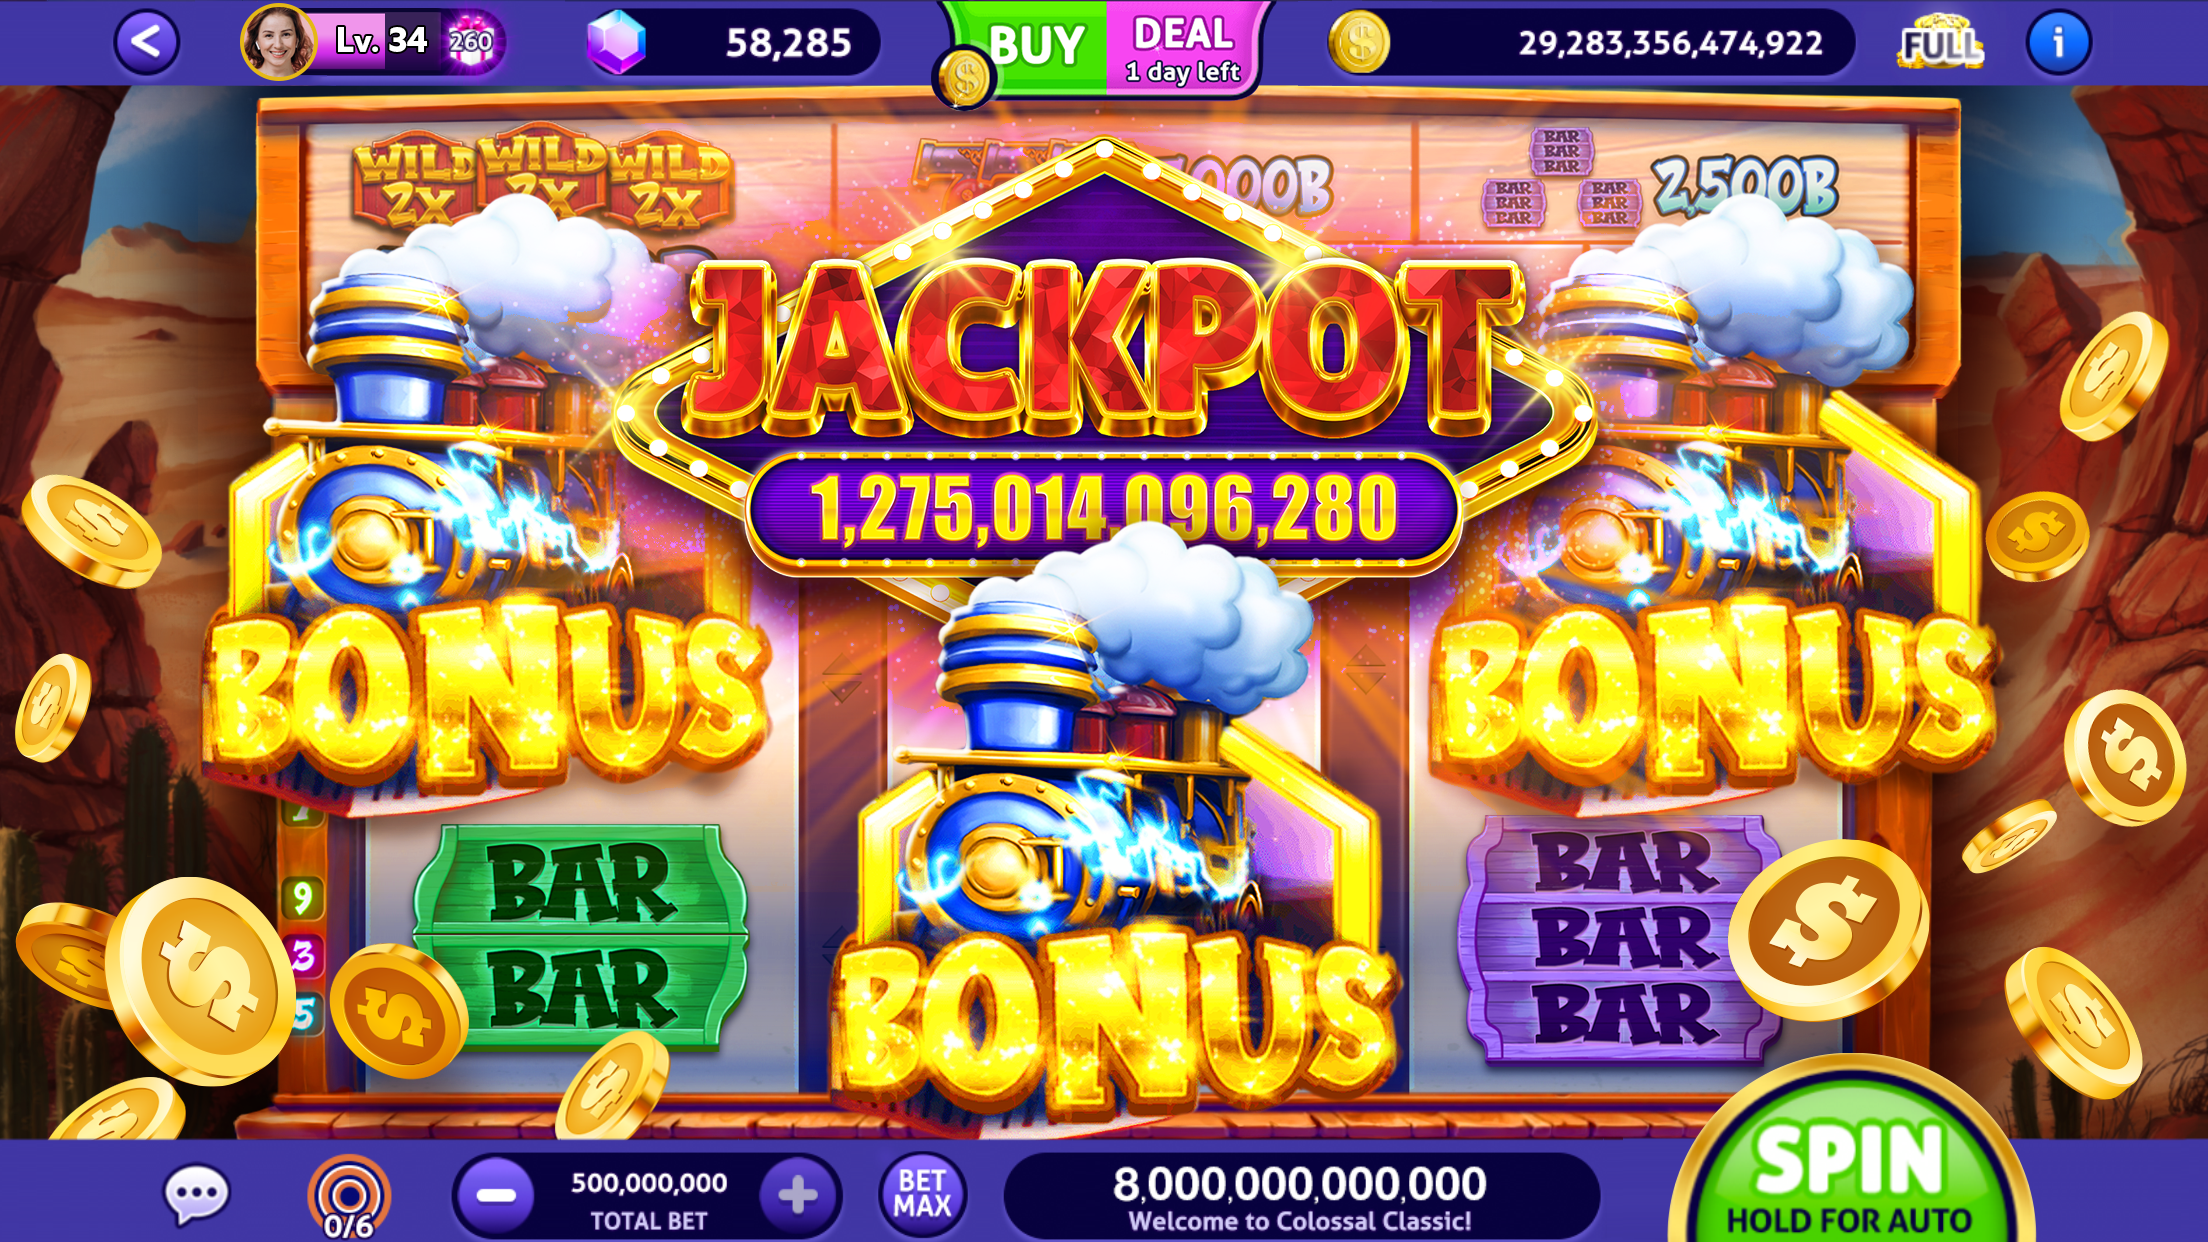 Club Vegas: Casino Slots Games